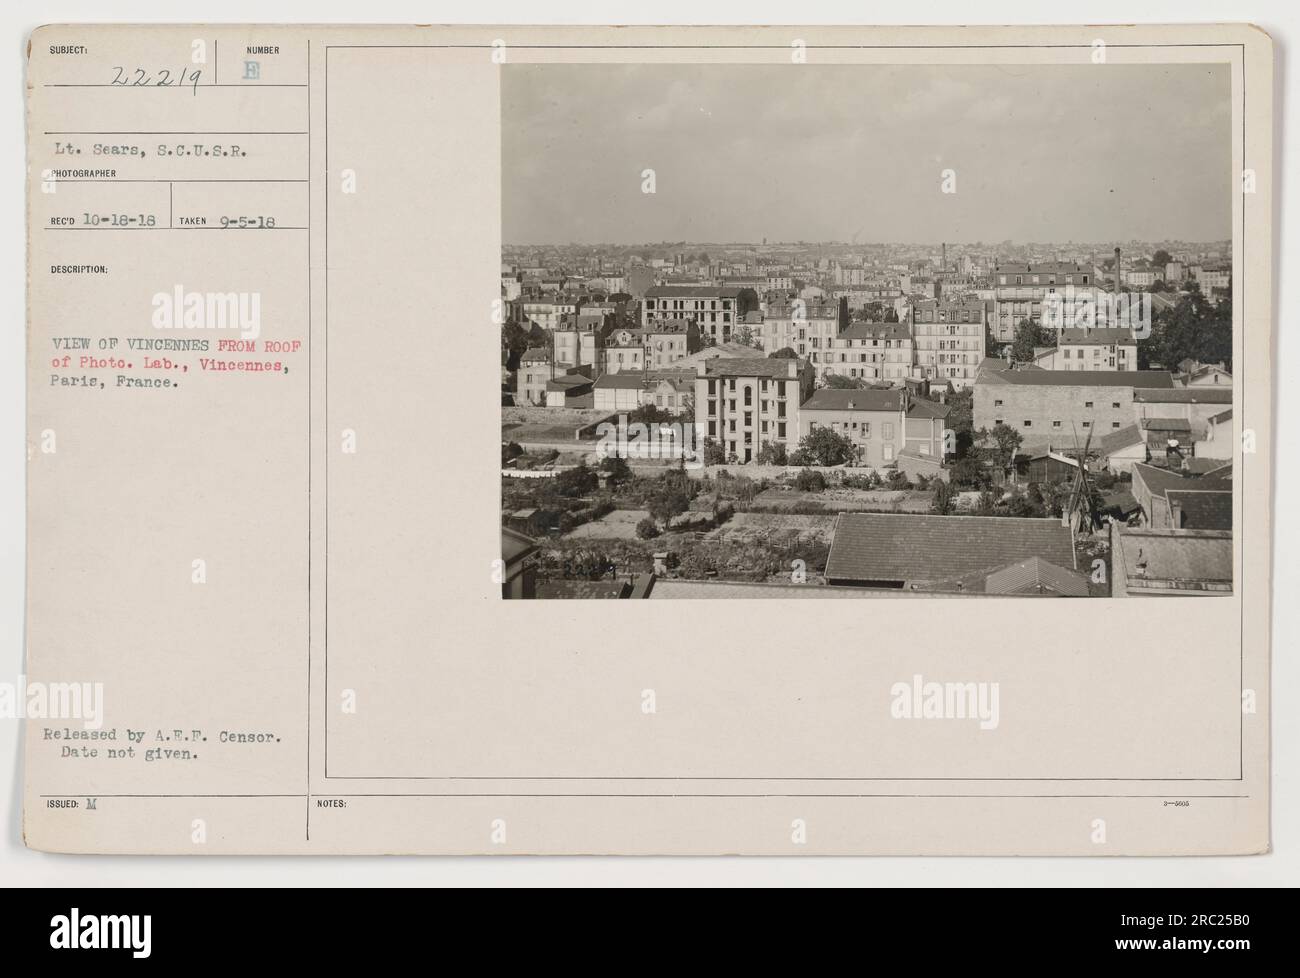 Bild mit Blick auf Vincennes vom Dach des Photo Lab in Paris, Frankreich. Aufgenommen am 5. September 1918 von LT. Sears von der S.C.U.S.R. Kein bestimmtes Veröffentlichungsdatum angegeben. Veröffentlicht von A.E.F. Censor. Zu Dokumentationszwecken während des Ersten Weltkriegs Stockfoto